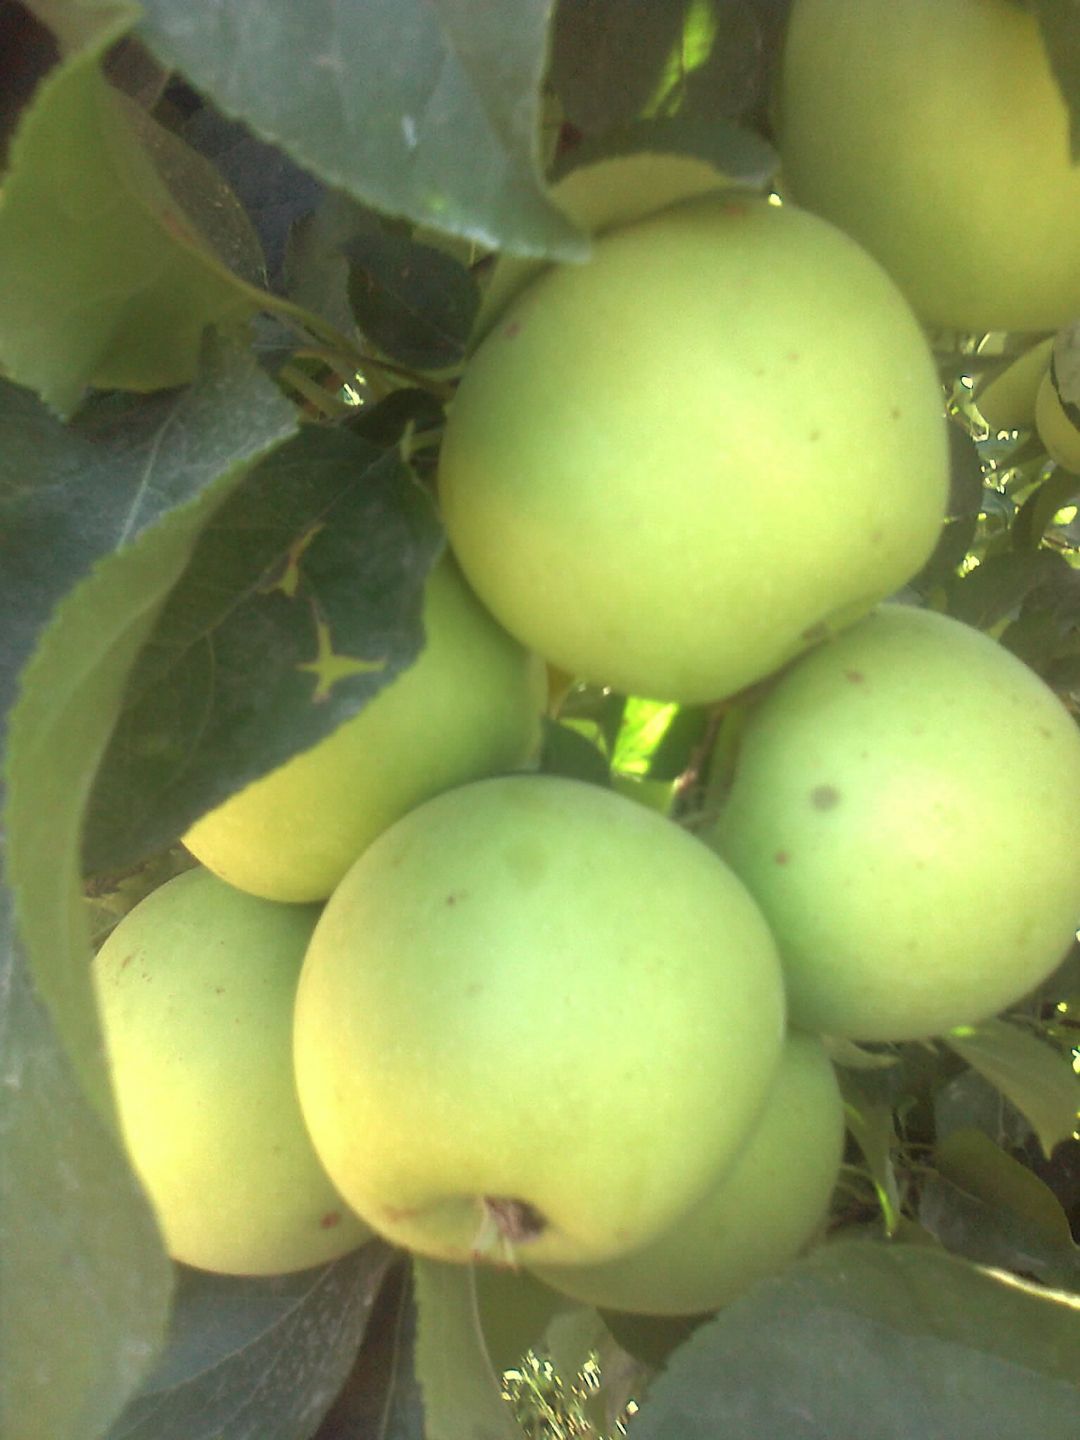 Elma - Tuncer Tunçer tarafından verilen satılık starking delicious çeşidi elma  ilanını ve diğer satılık elma ilanlarını tarimziraat.com adresinde bulabilirsiniz